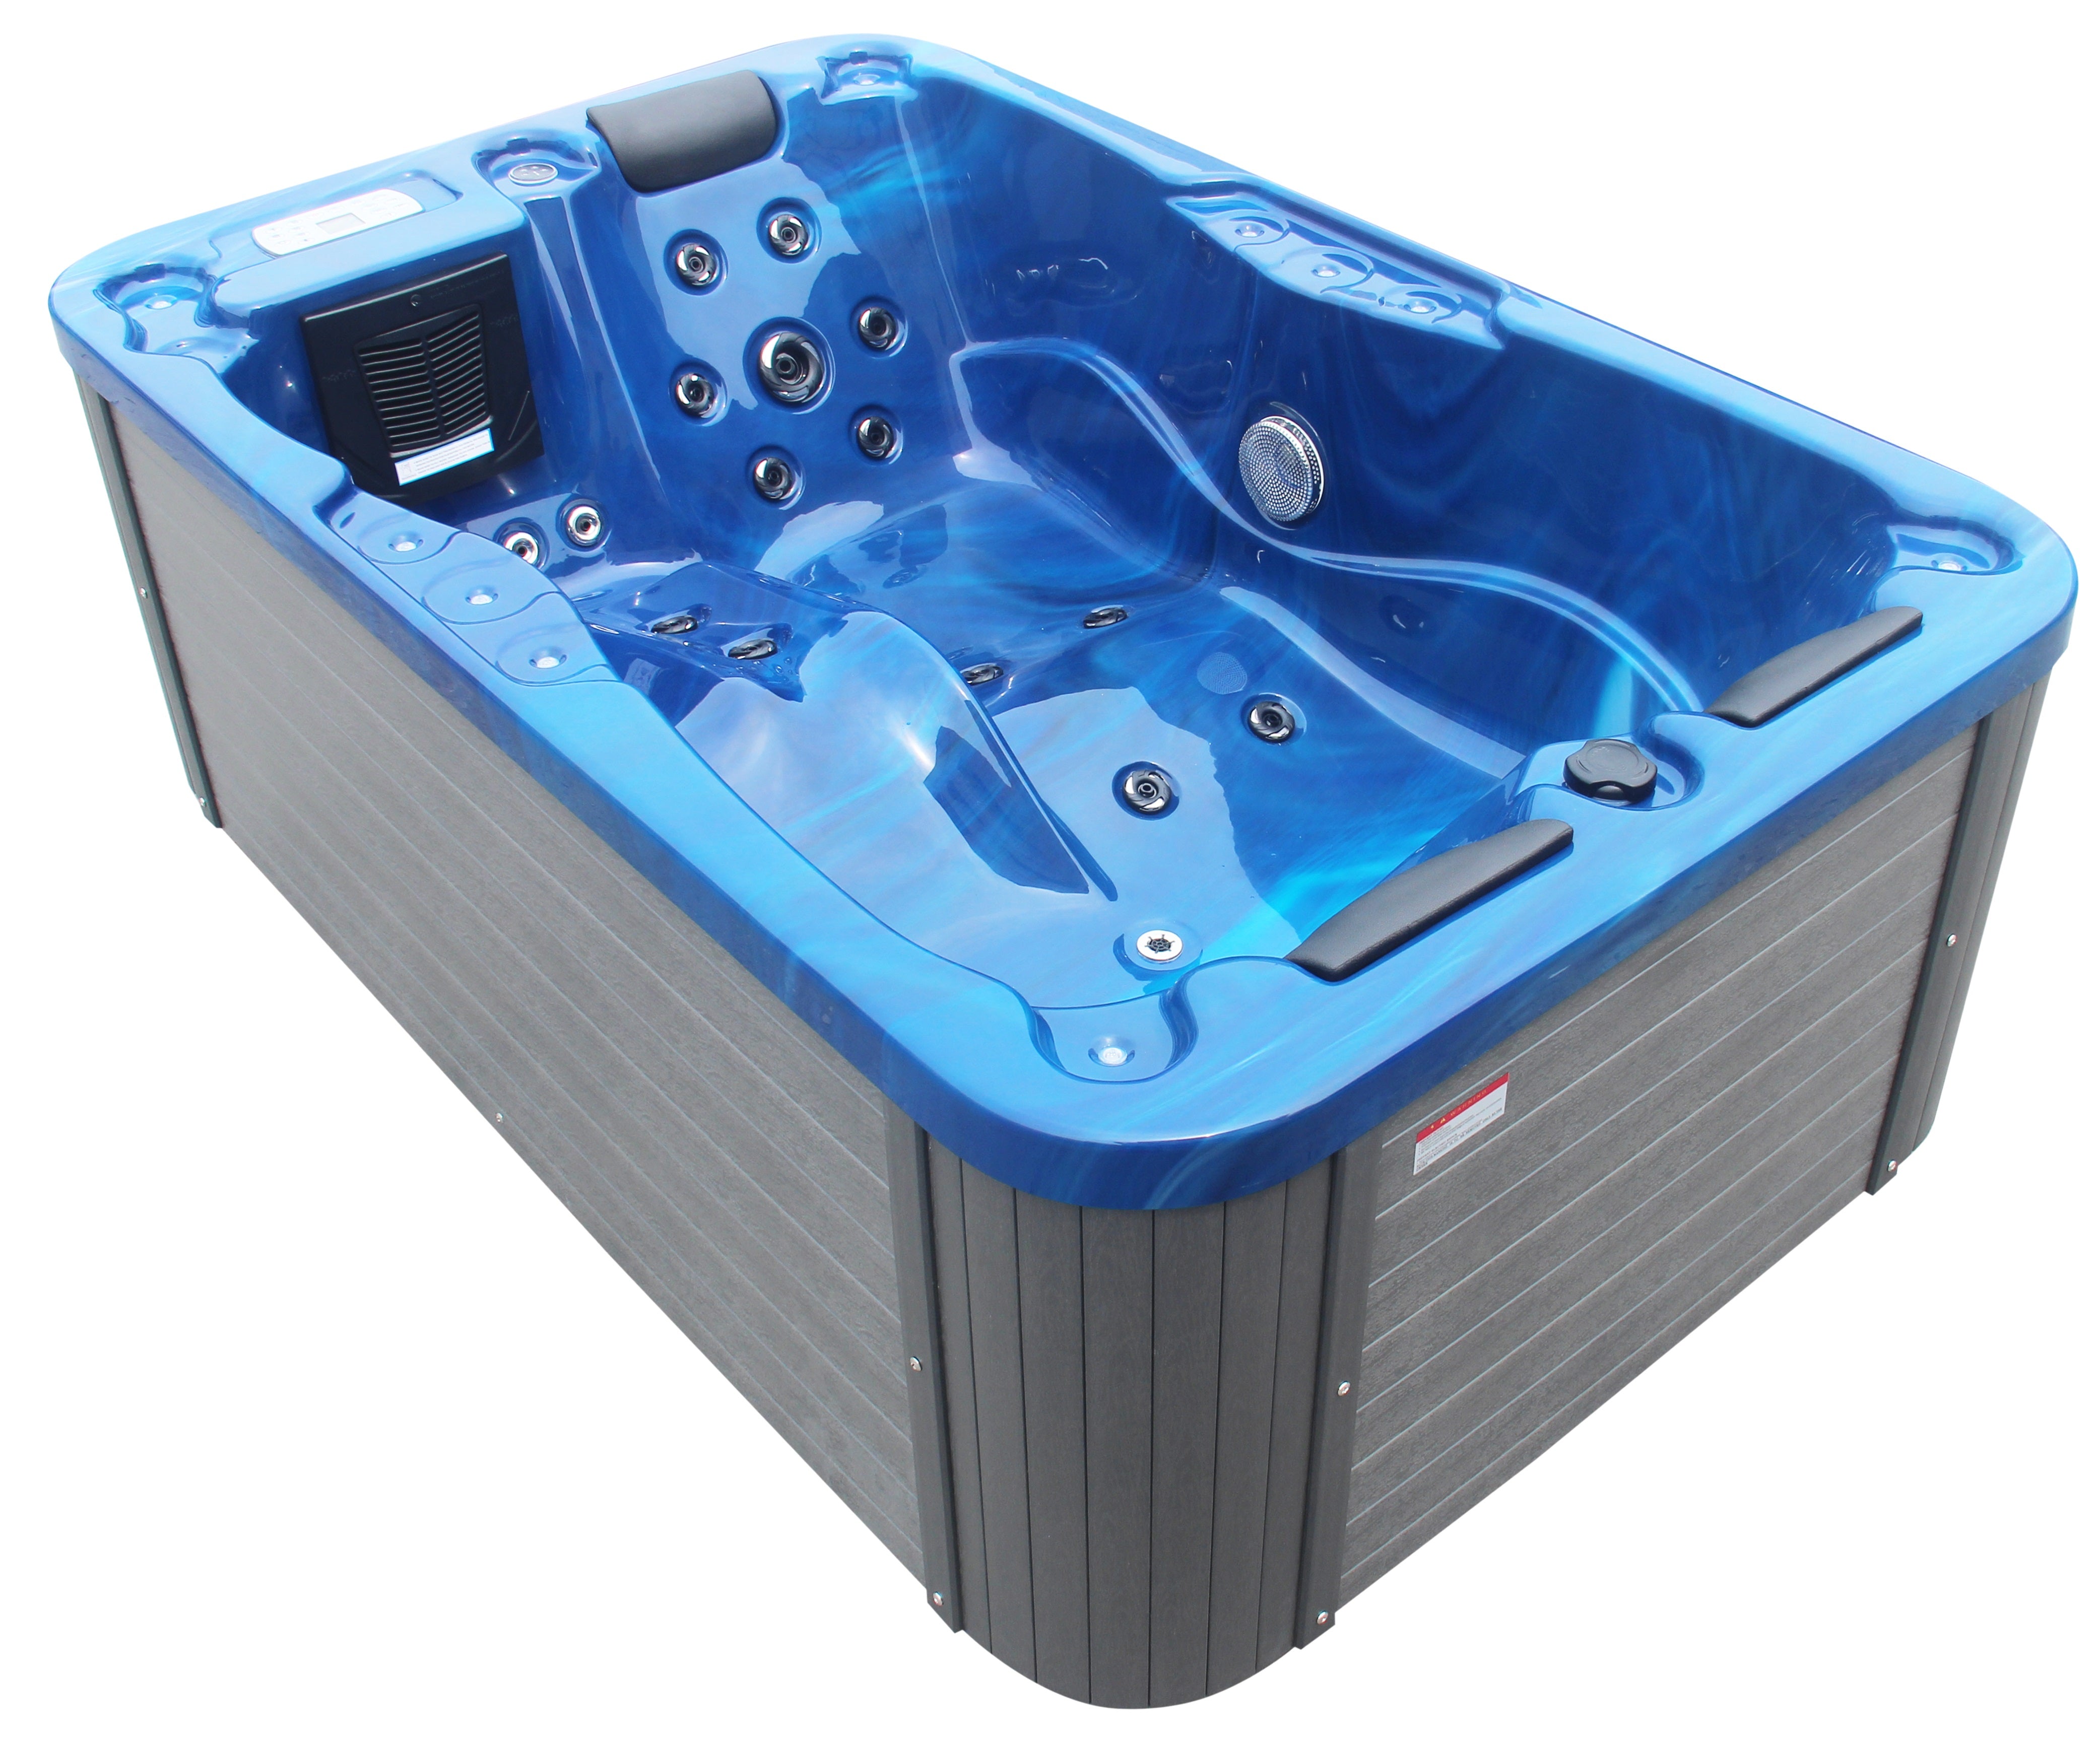 Sanotechnik Whirlpool MODENA - Blau - 35 Massagedüsen für 3 Personen mit Radio, Lautsprecher, Bluetooth und LED Beleuchtung